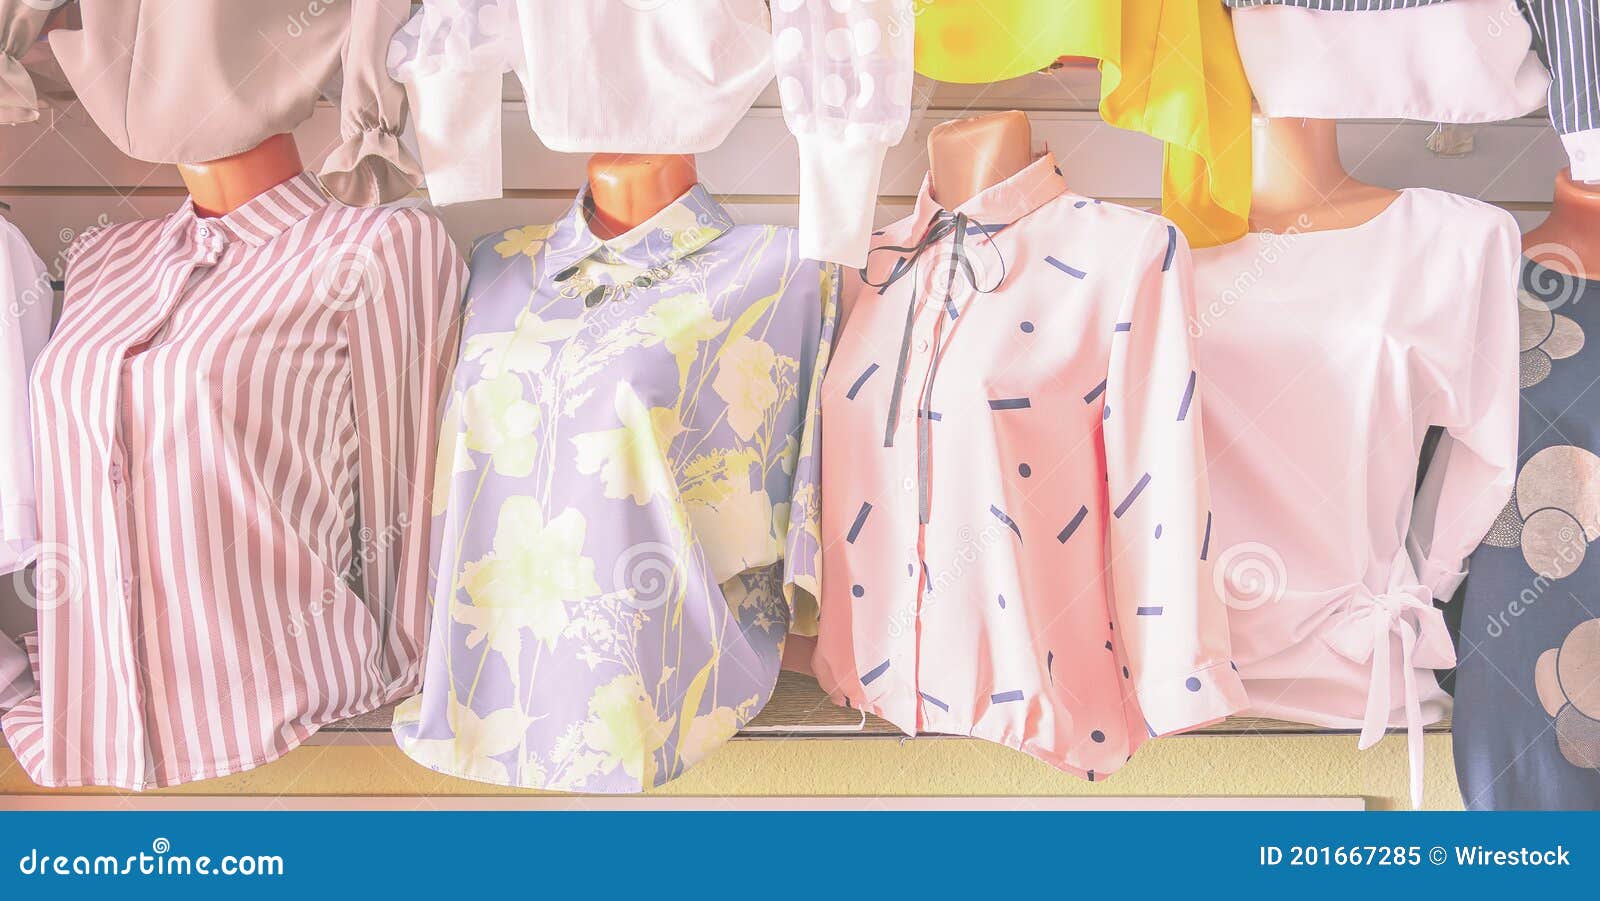 Escaparate De Una Tienda De Ropa De Mujer. Blusas Brillantes De Verano En  Maniquíes. Imagen de archivo - Imagen de color, ropa: 201667285